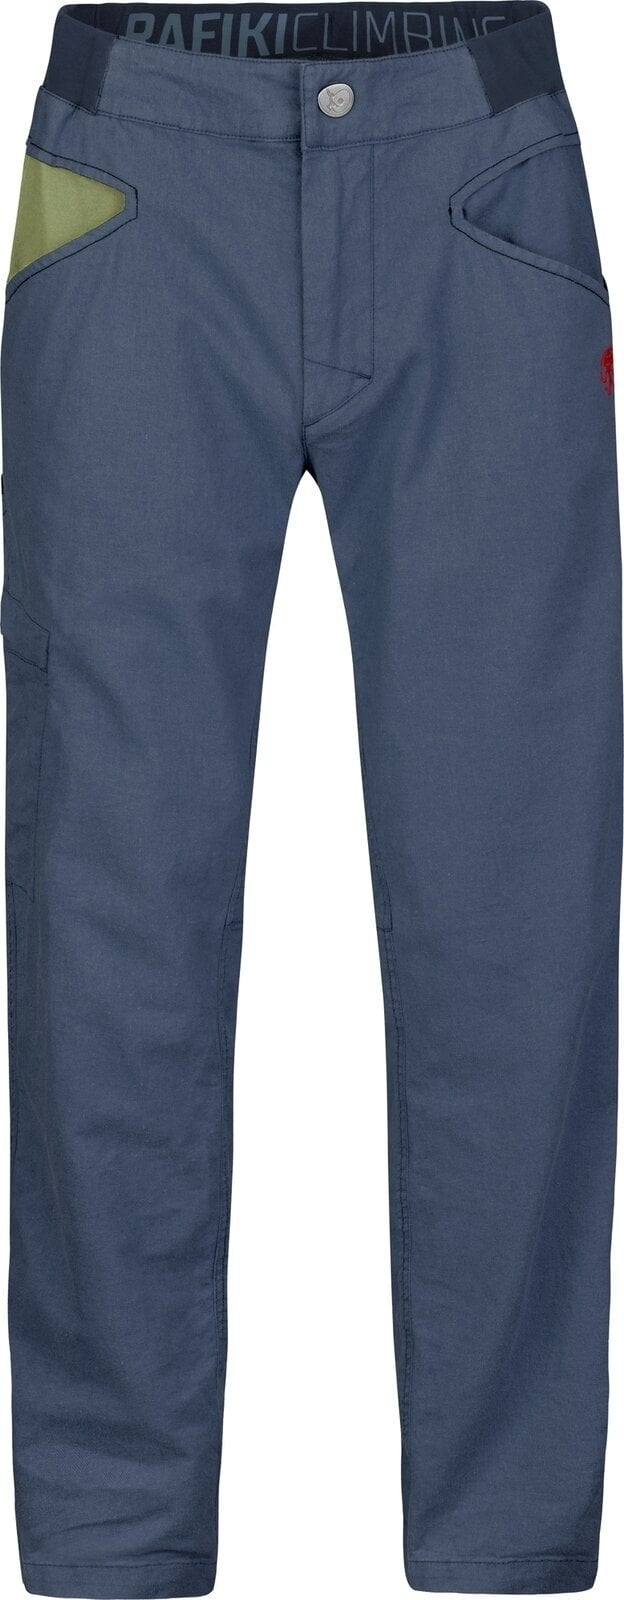 Spodnie outdoorowe Rafiki Grip Man Pants India Ink XL Spodnie outdoorowe